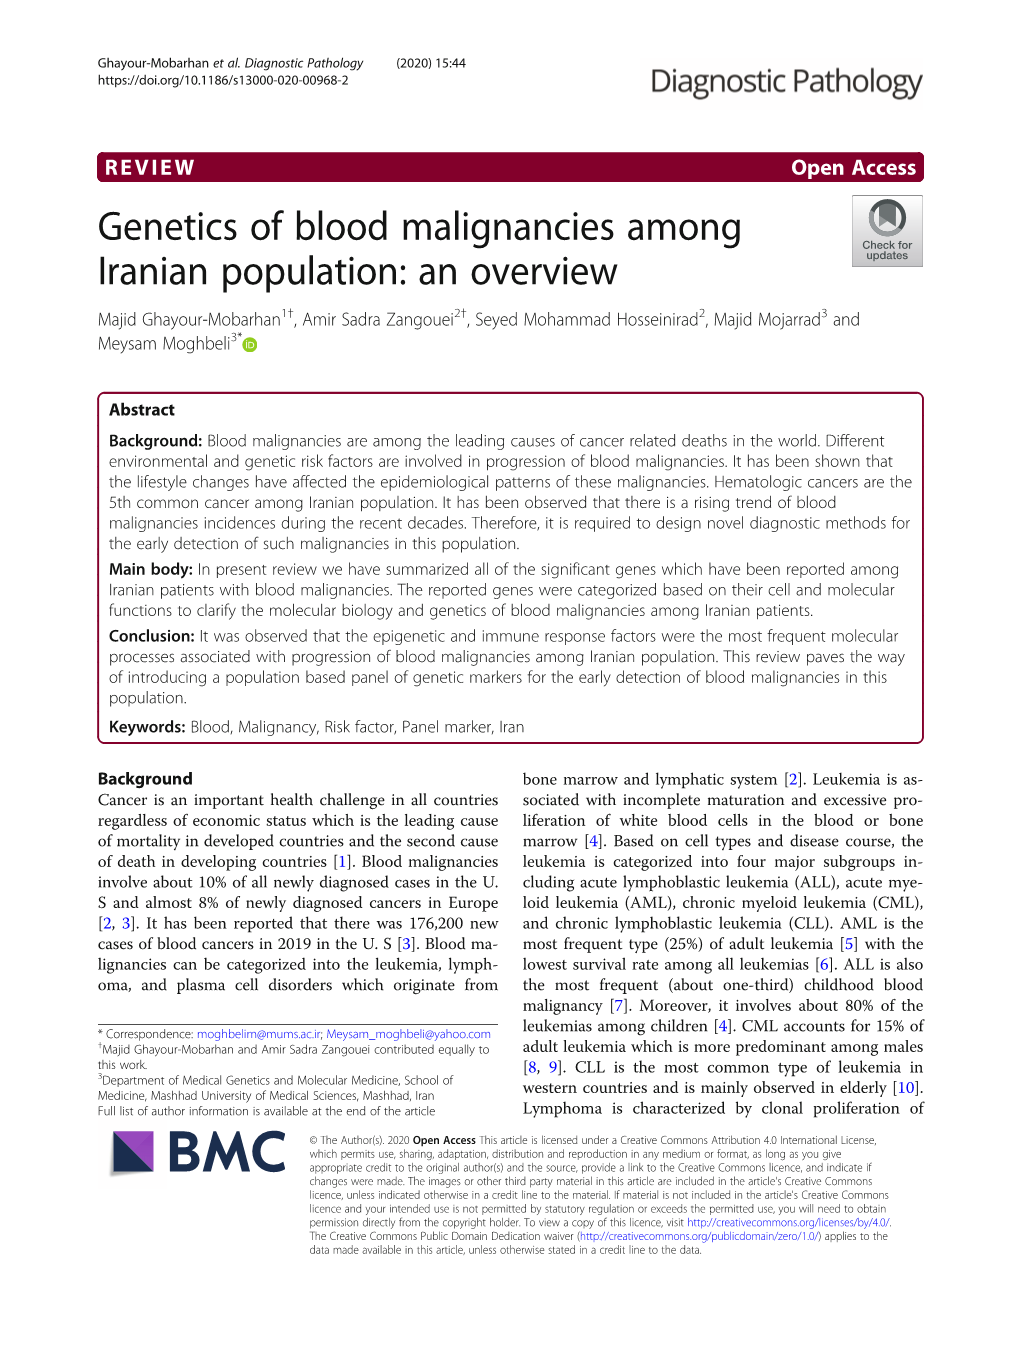 Genetics of Blood Malignancies Among